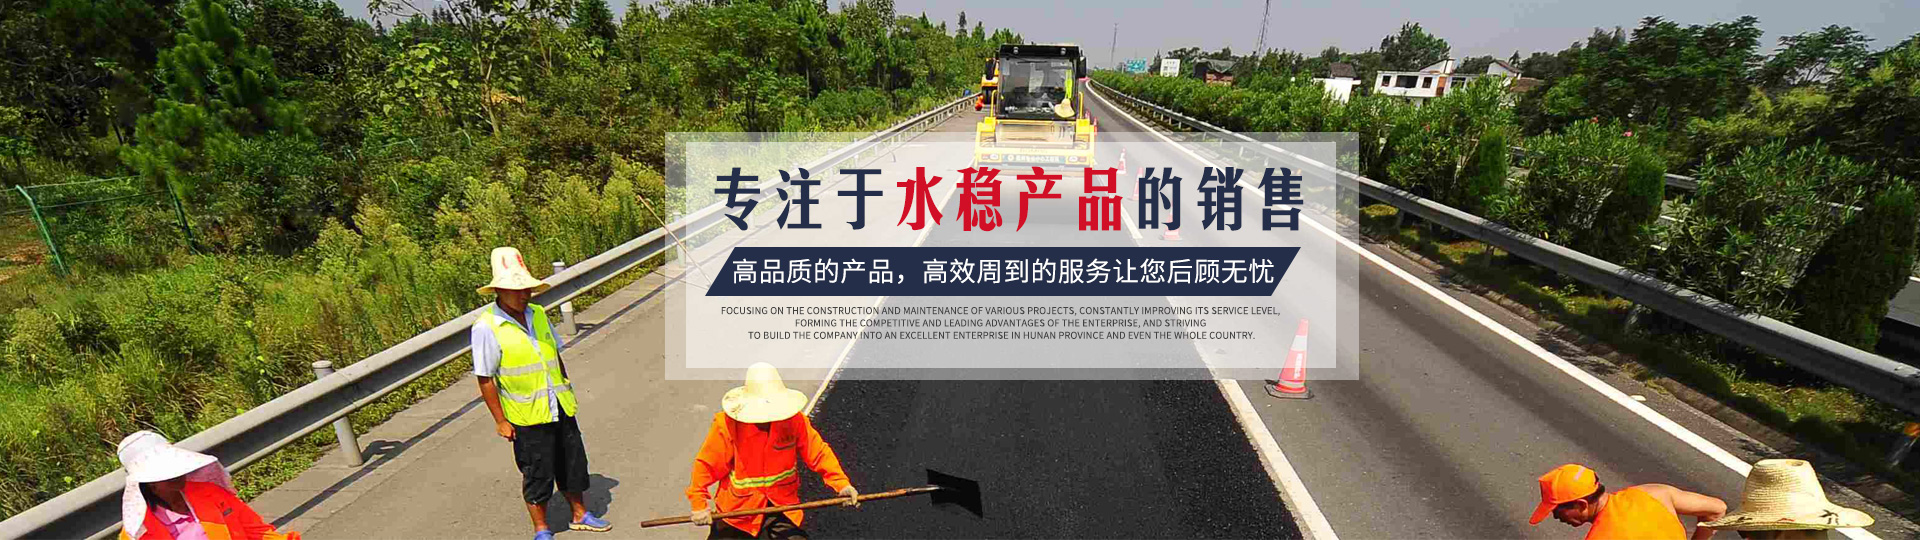 湖南星远工程有限公司_长沙市政工程施工承包|长沙公路工程承包|长沙绿化工程承包